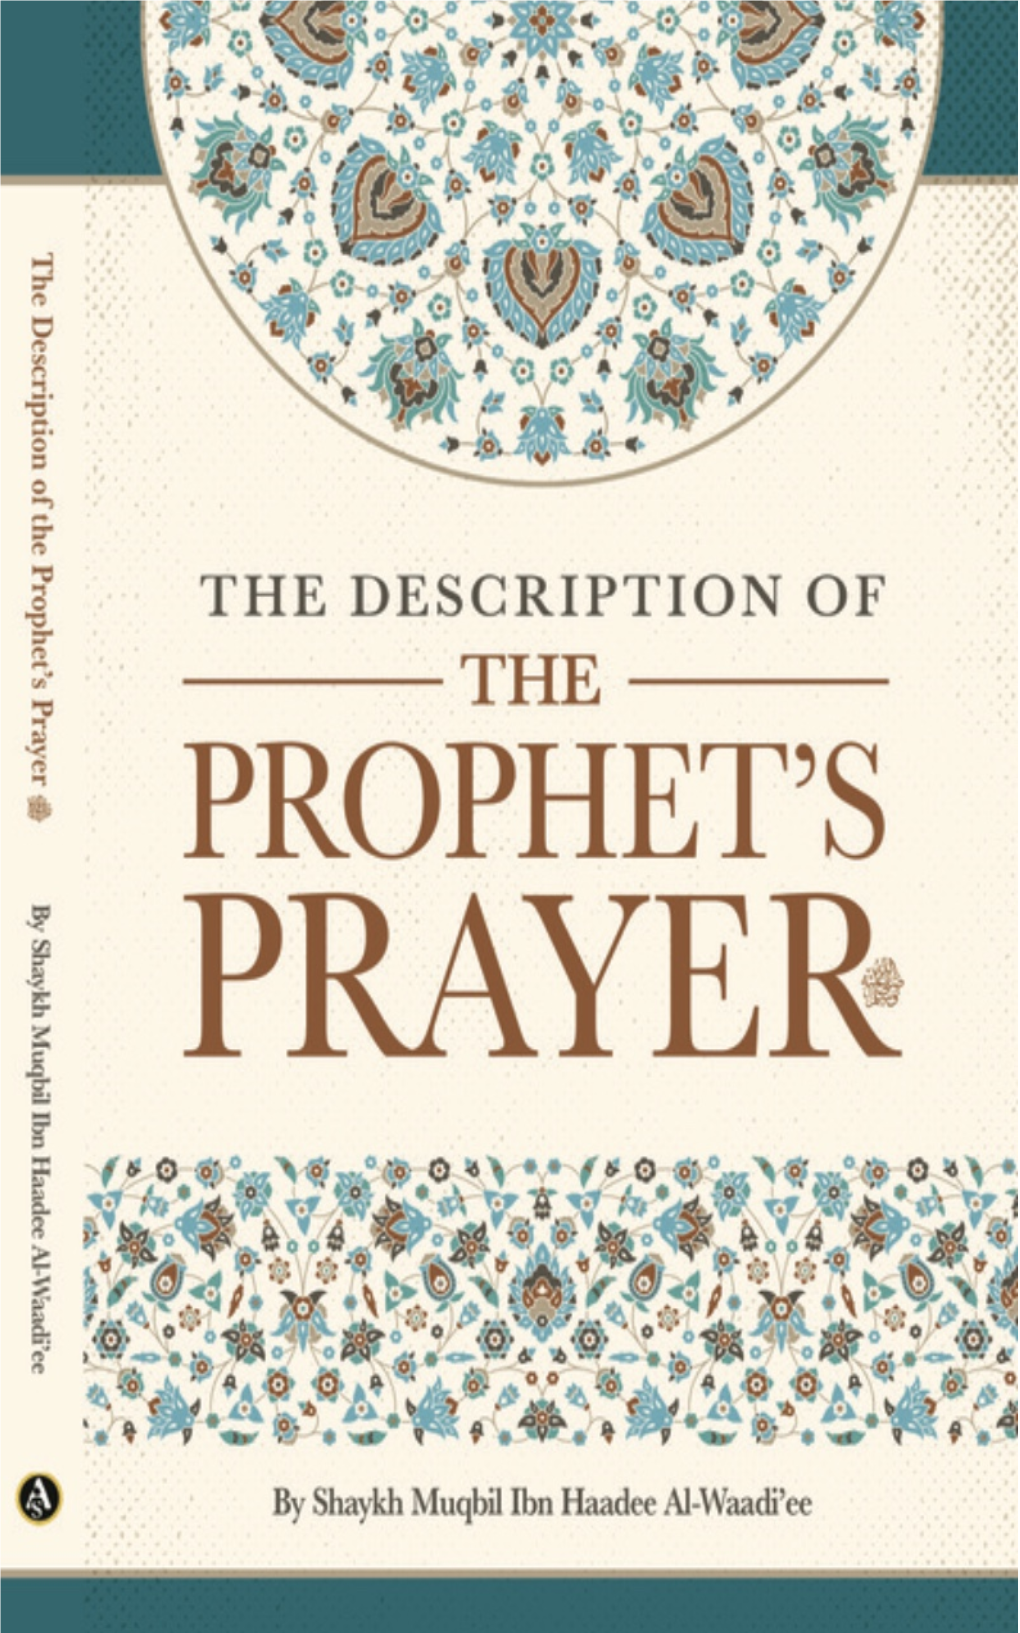 The Prophet's Prayer – Sh. Muqbil Ibn Haadee Al-Waadi'ee